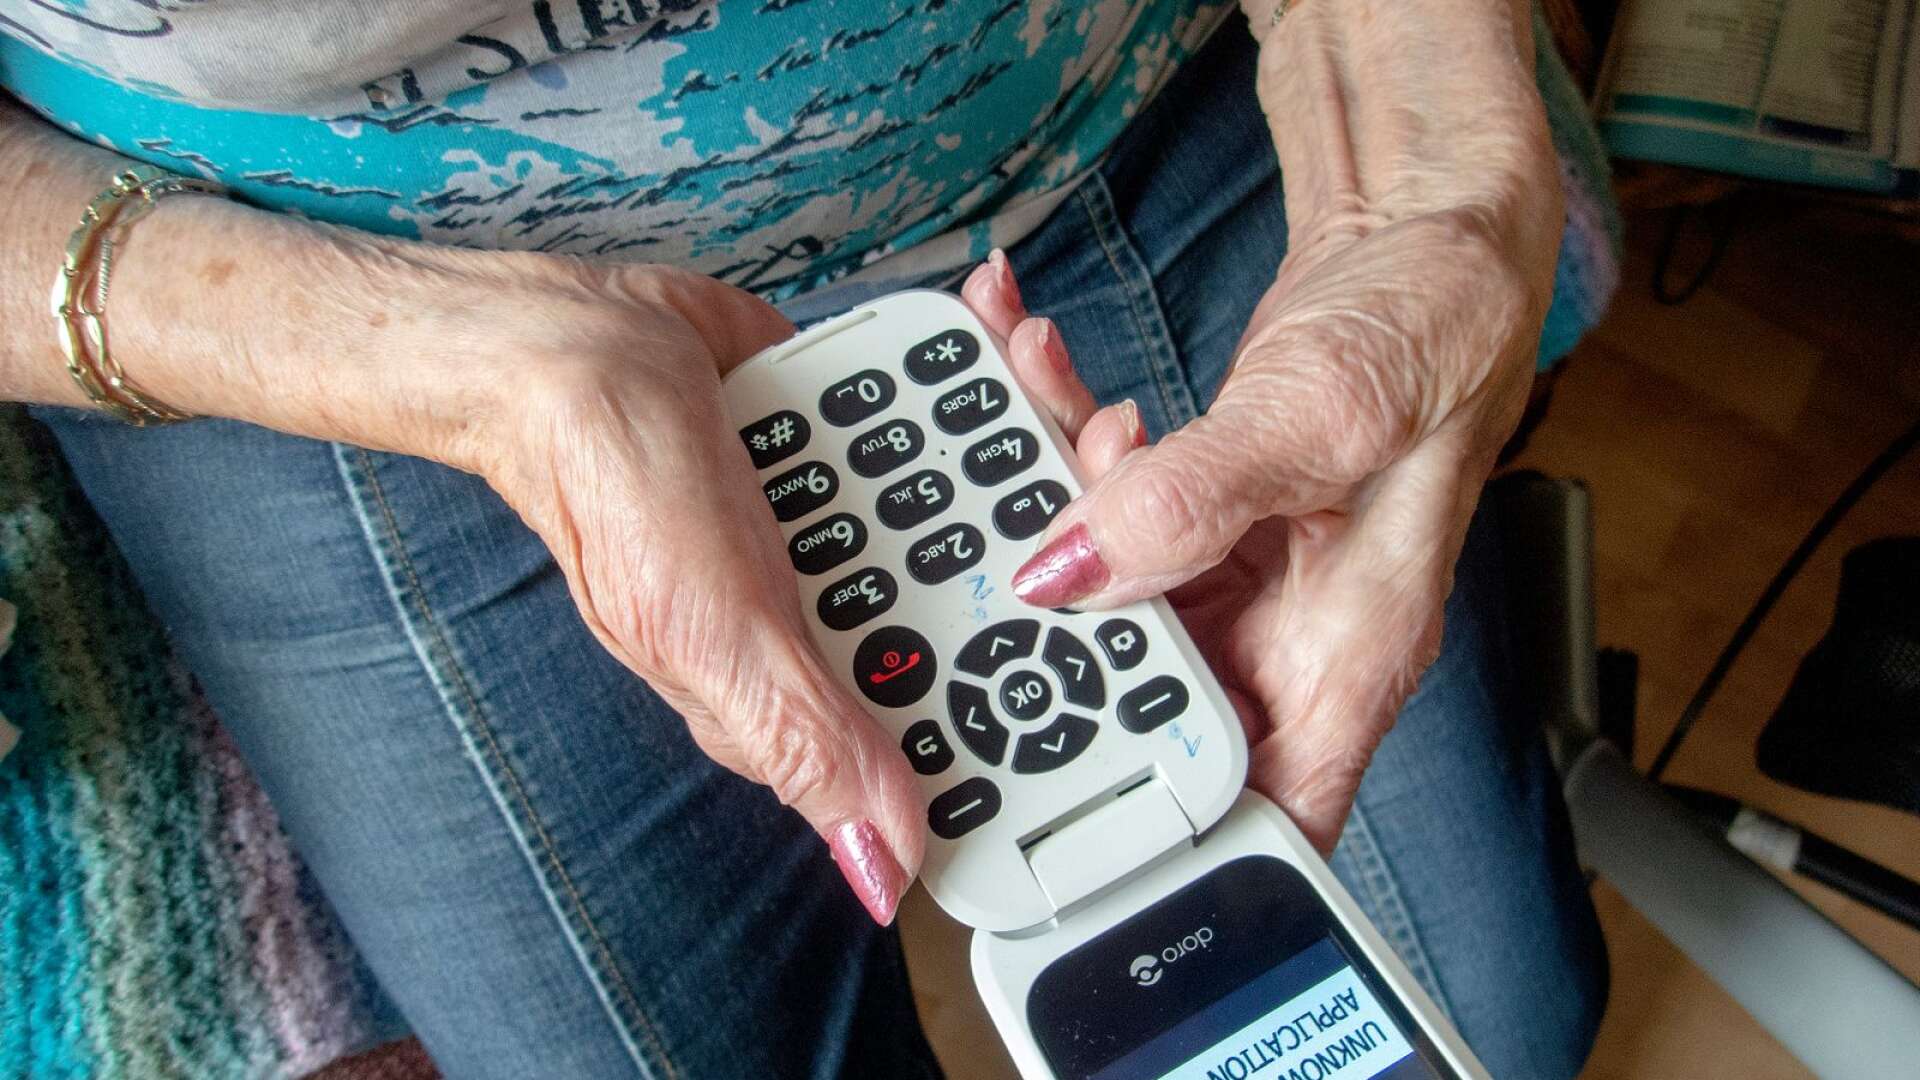 En telefonkedja för att minska äldres isolering har föreslagits, men folkhälsonämnden föreslår avslag till motionen.